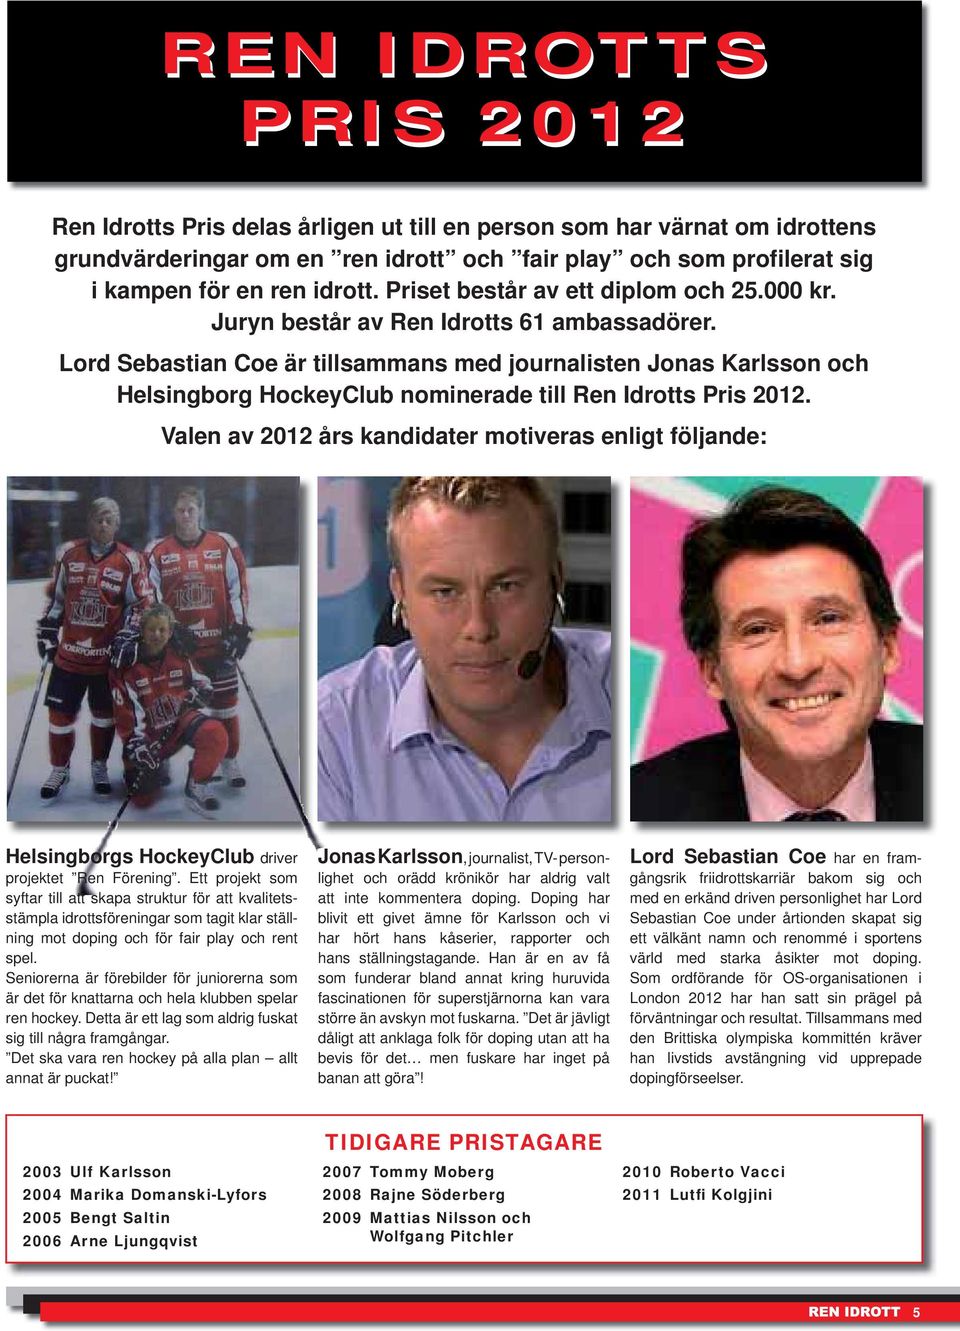 Lord Sebastian Coe är till sammans med journalisten Jonas Karlsson och Helsingborg HockeyClub nominerade till Ren Idrotts Pris 2012.